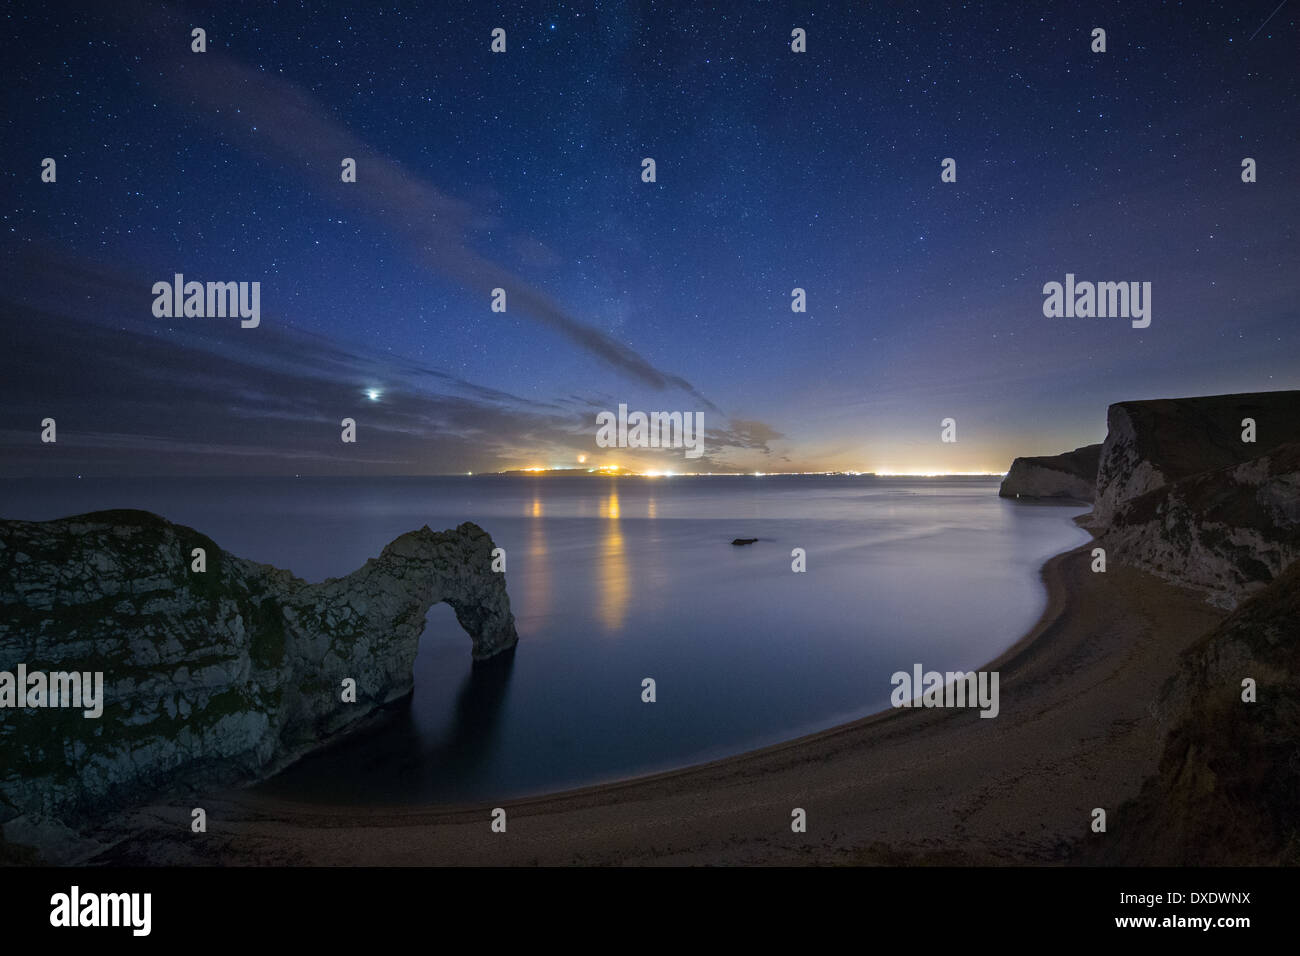 Les stars et Milky Way plus de Durdle Door et la Côte Jurassique, avec les lumières de Weymouth et Portland, Dorset, Angleterre au-delà Banque D'Images